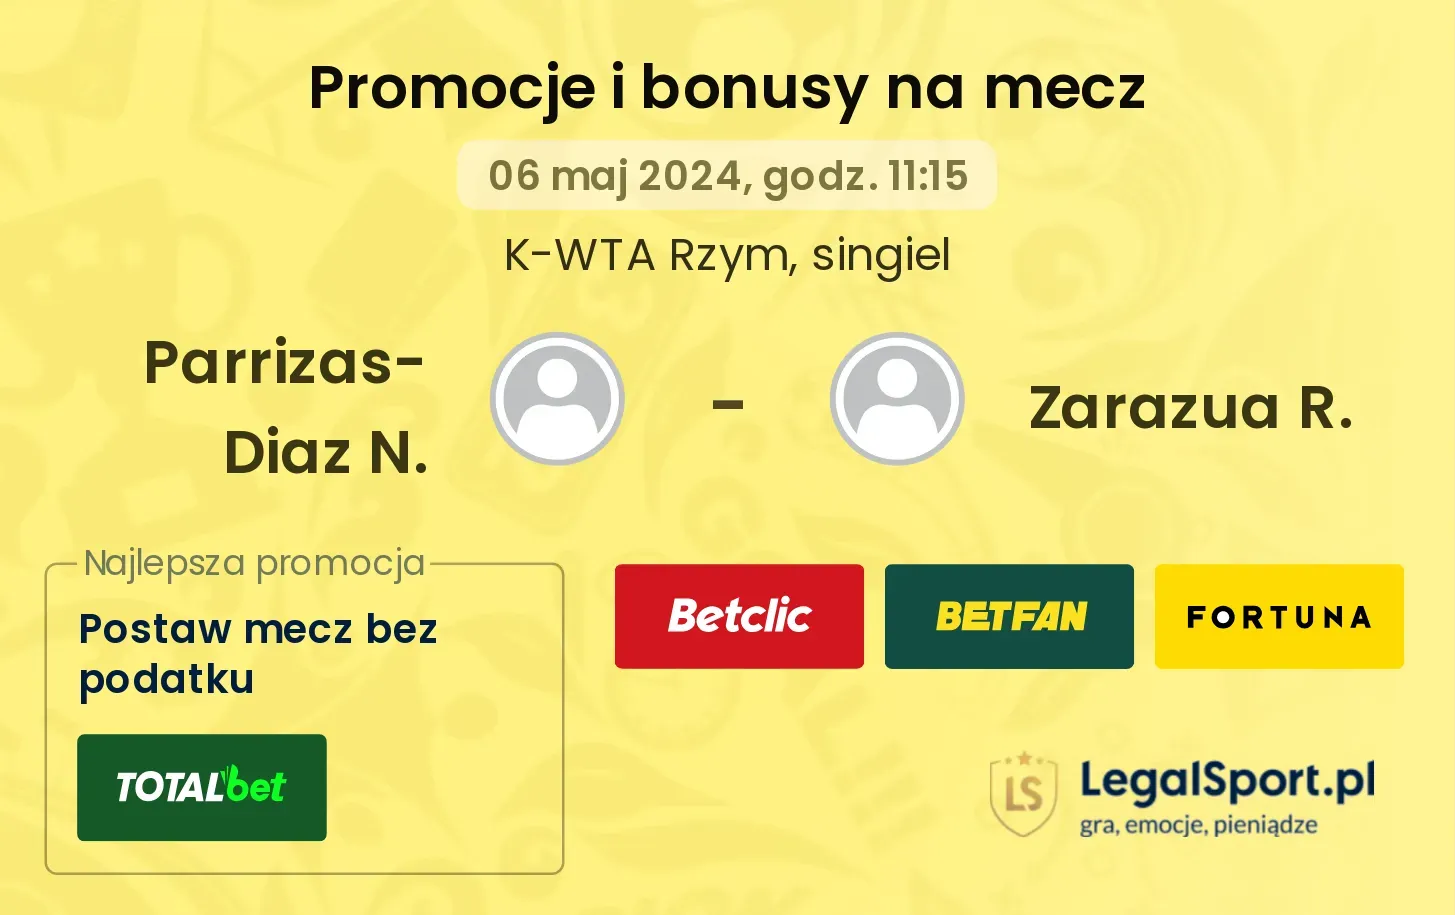 Parrizas-Diaz N. - Zarazua R. promocje bonusy na mecz